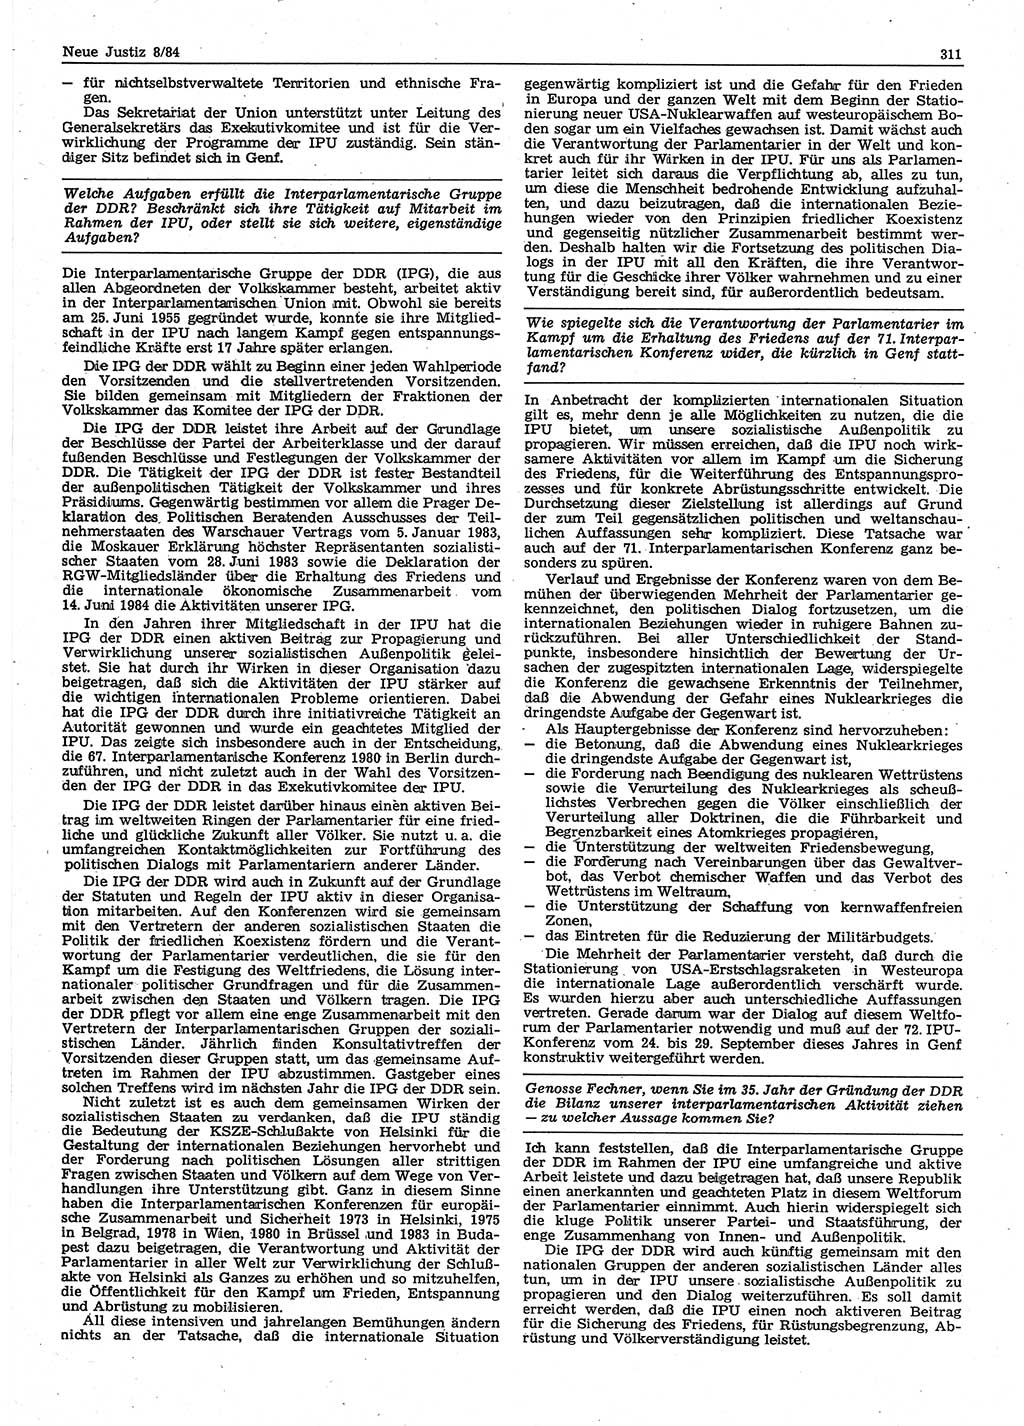 Neue Justiz (NJ), Zeitschrift für sozialistisches Recht und Gesetzlichkeit [Deutsche Demokratische Republik (DDR)], 38. Jahrgang 1984, Seite 311 (NJ DDR 1984, S. 311)